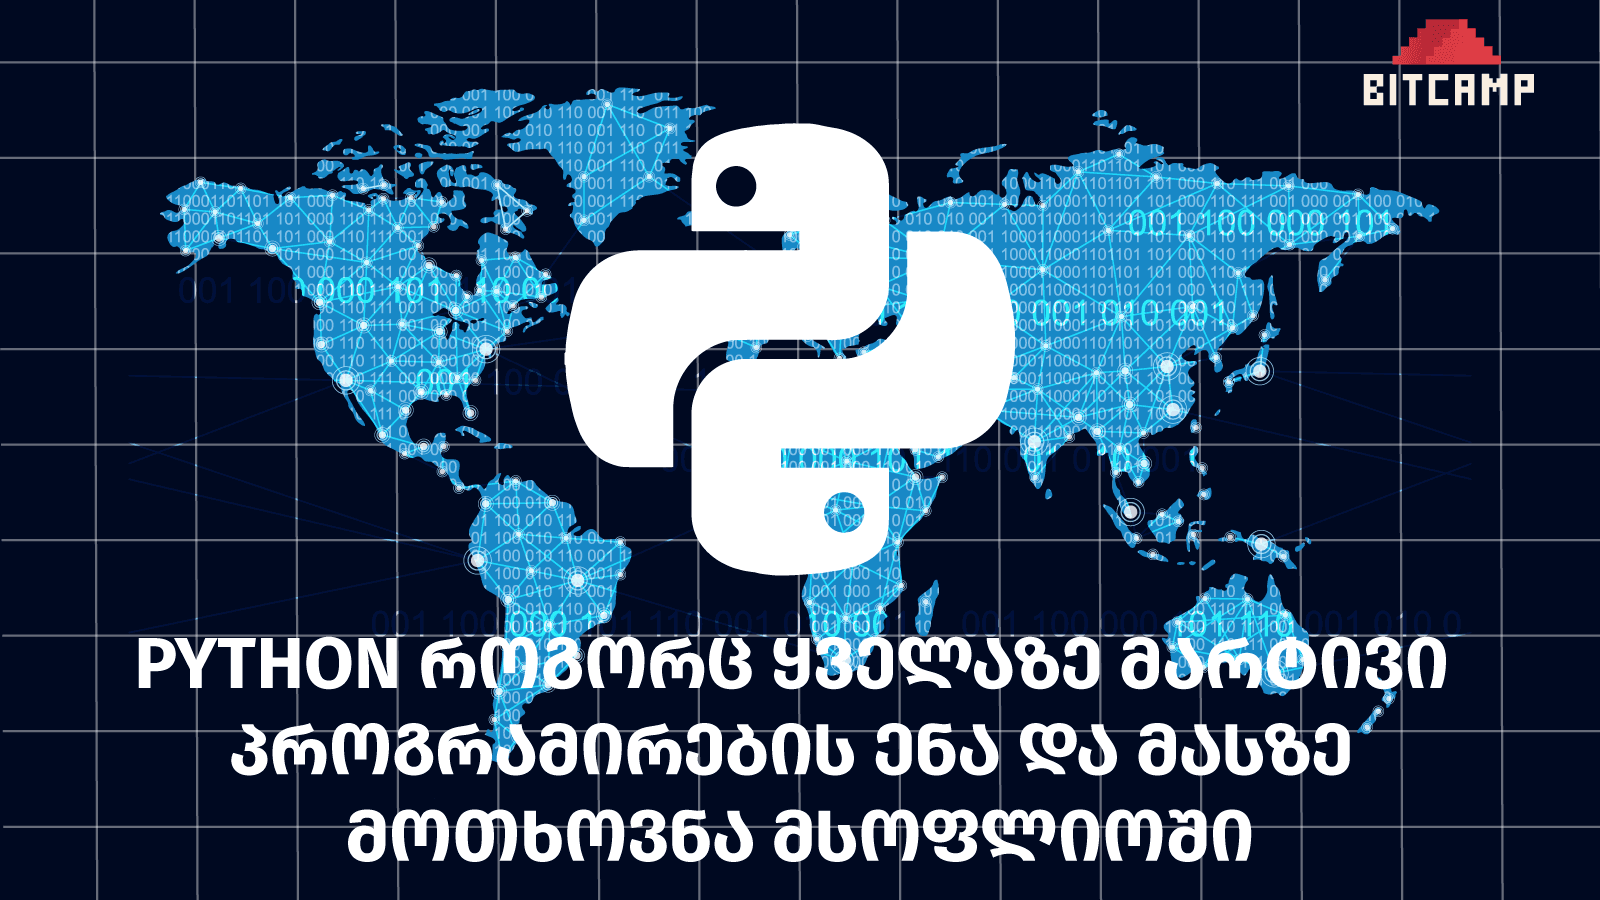 python როგორც ყველაზე მარტივი პროგრამირების ენა და მასზე მოთხოვნა მსოფლიოში